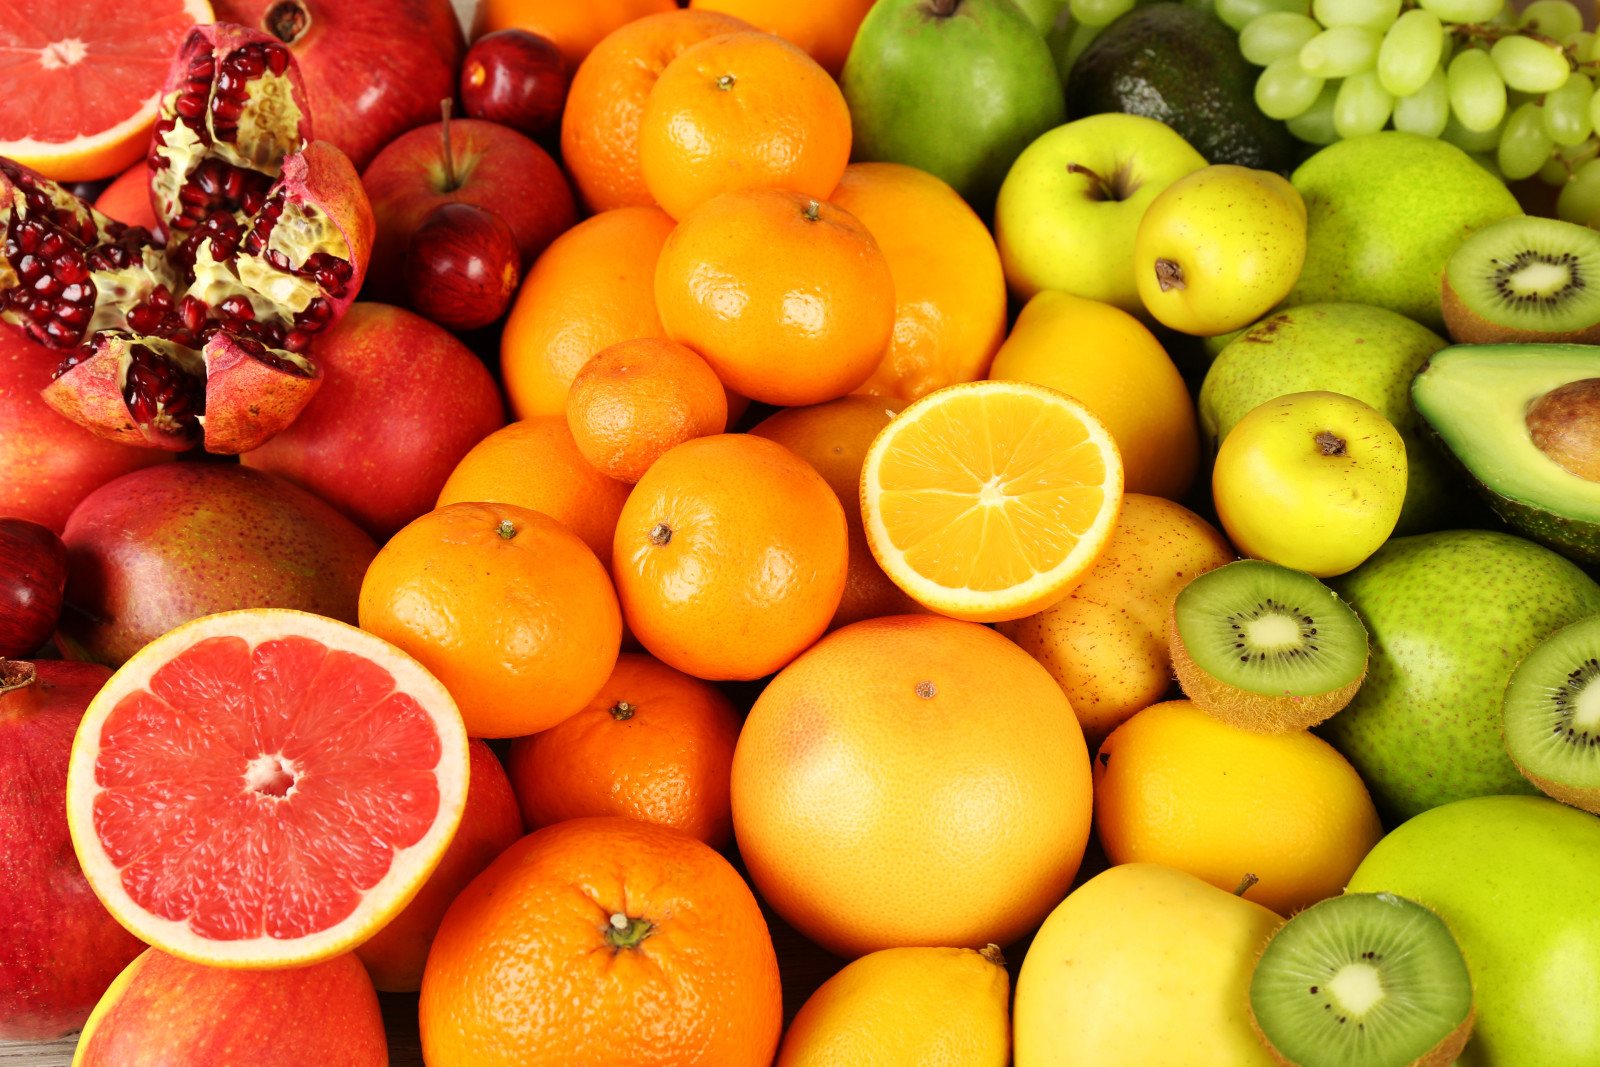 浆果, 新鲜, 橘子, 苹果, 猕猴桃, 水果, 葡萄柚, 水果